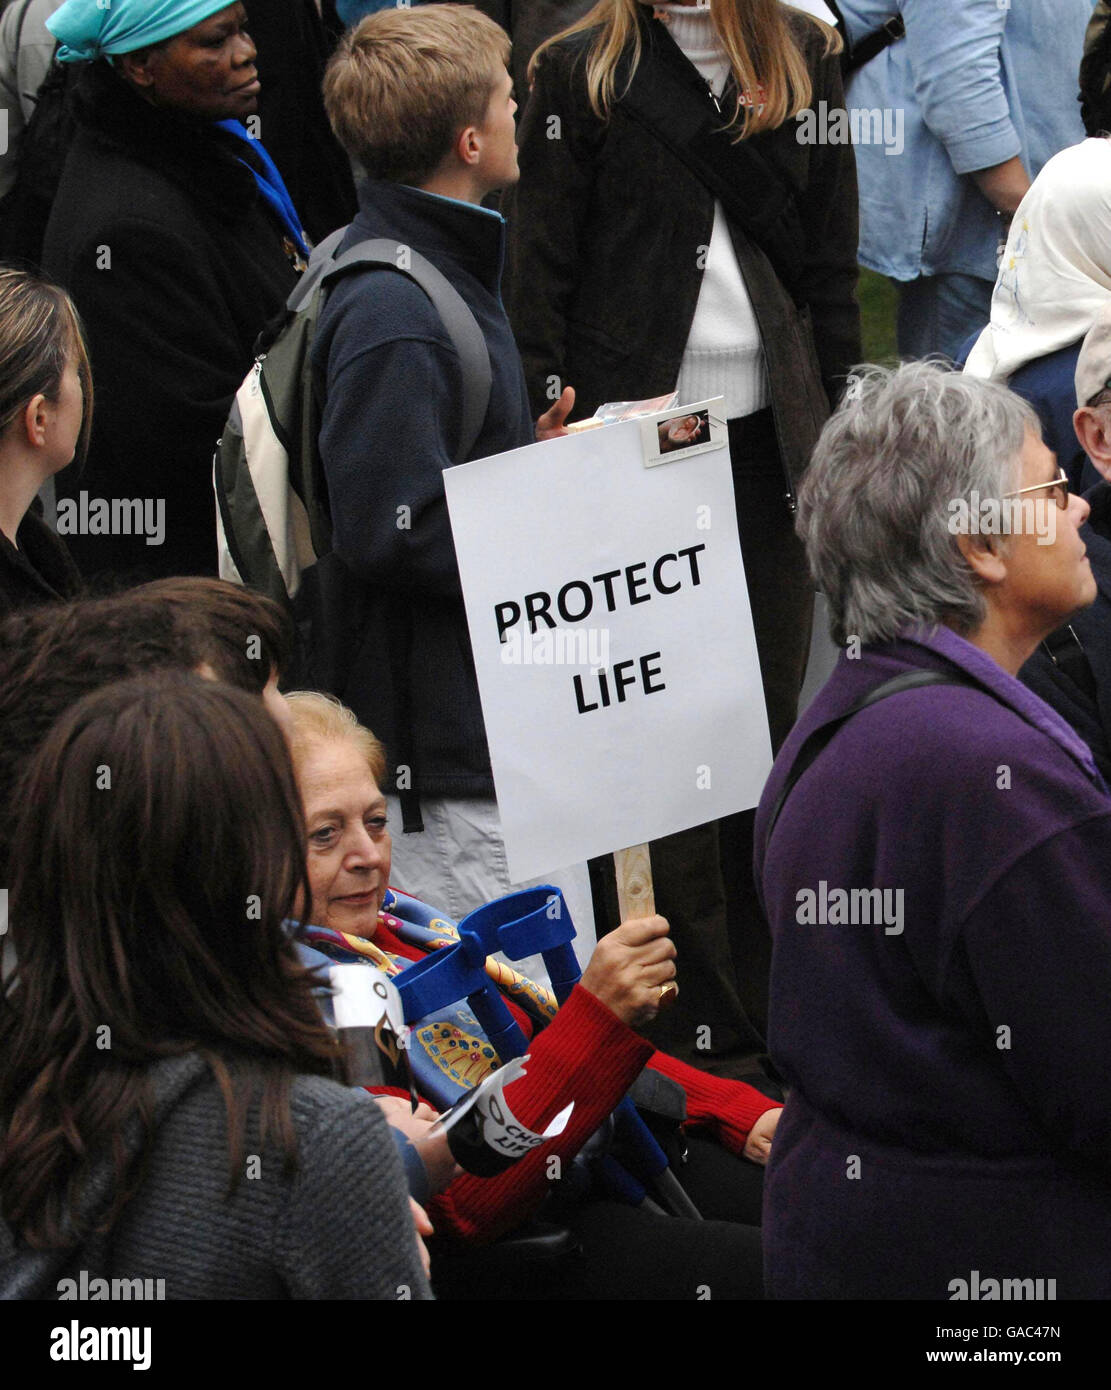 Anti-Abtreibungsaktivisten demonstrieren vor den Houses of Parliament in Westminster, London, um den 40. Jahrestag der Legalisierung der Abtreibung zu begehen. Stockfoto